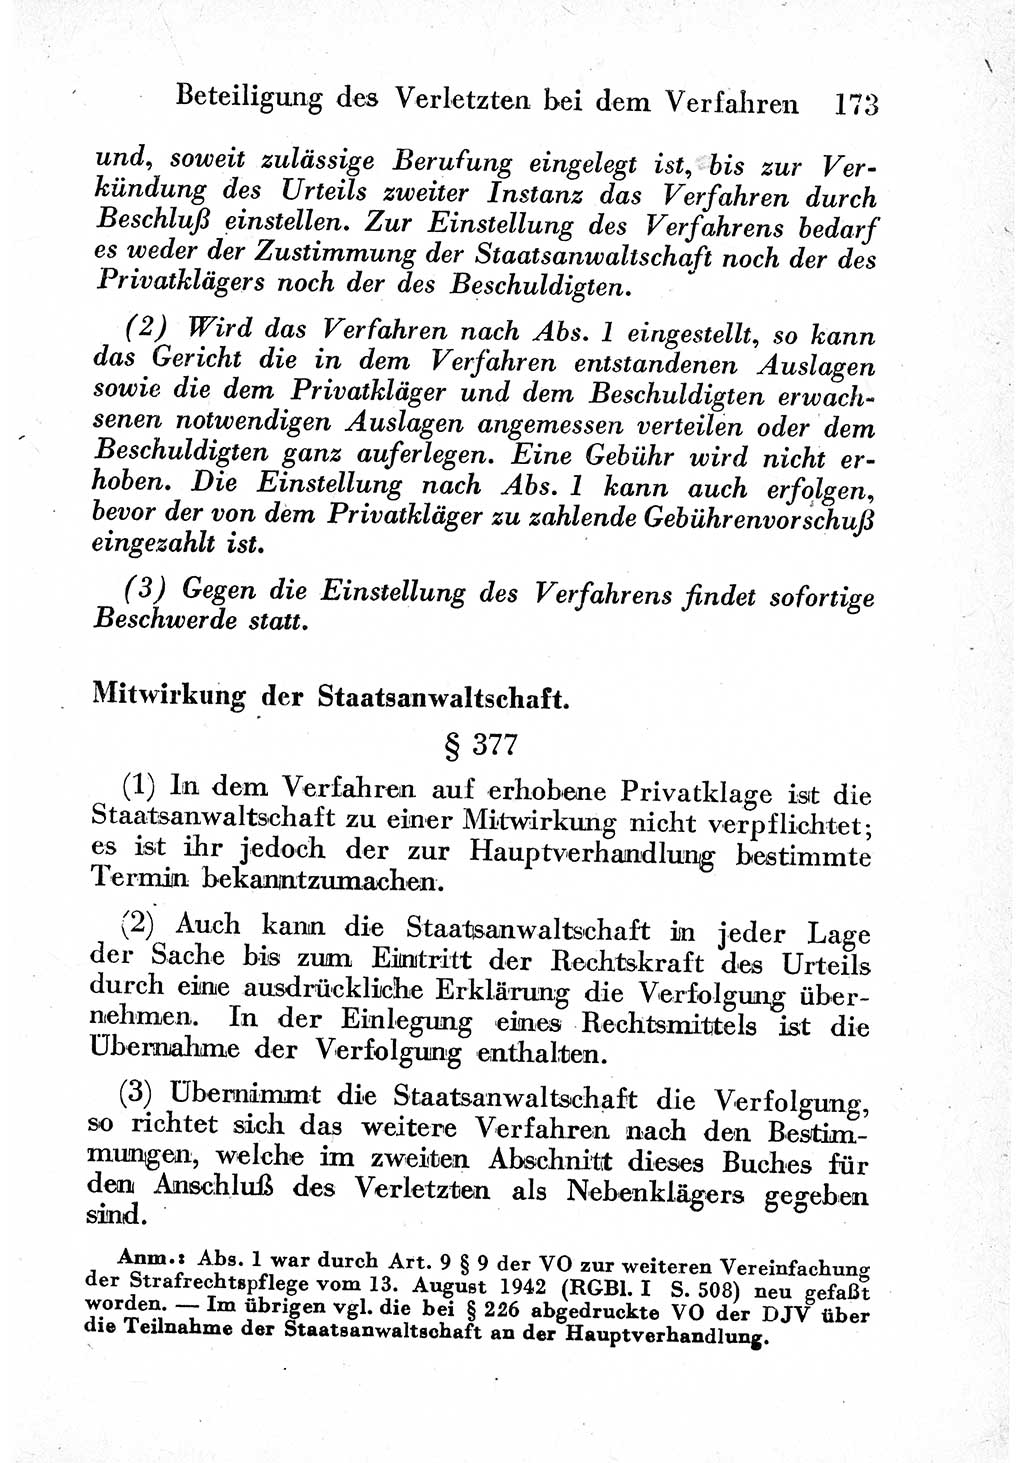 Strafprozeßordnung (StPO), Gerichtsverfassungsgesetz (GVG) und zahlreiche Nebengesetze der sowjetischen Besatzungszone (SBZ) in Deutschland 1949, Seite 173 (StPO GVG Ges. SBZ Dtl. 1949, S. 173)